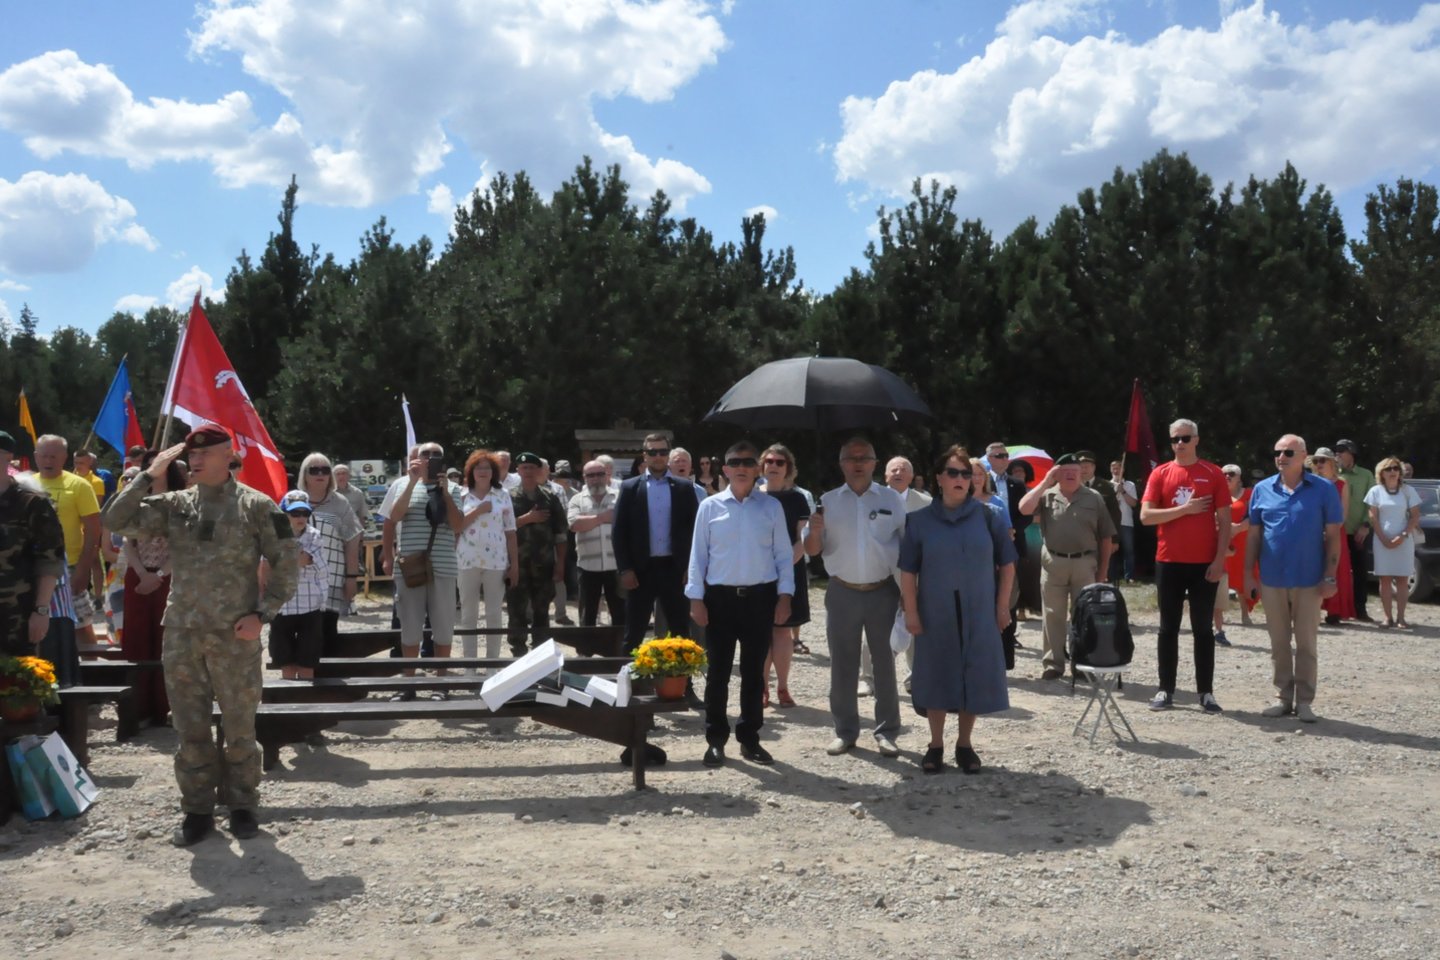 Žalgirio pergalės parke Babtų seniūnijoje paminėtos pergalės Žalgirio mūšyje 610-osios metinės.